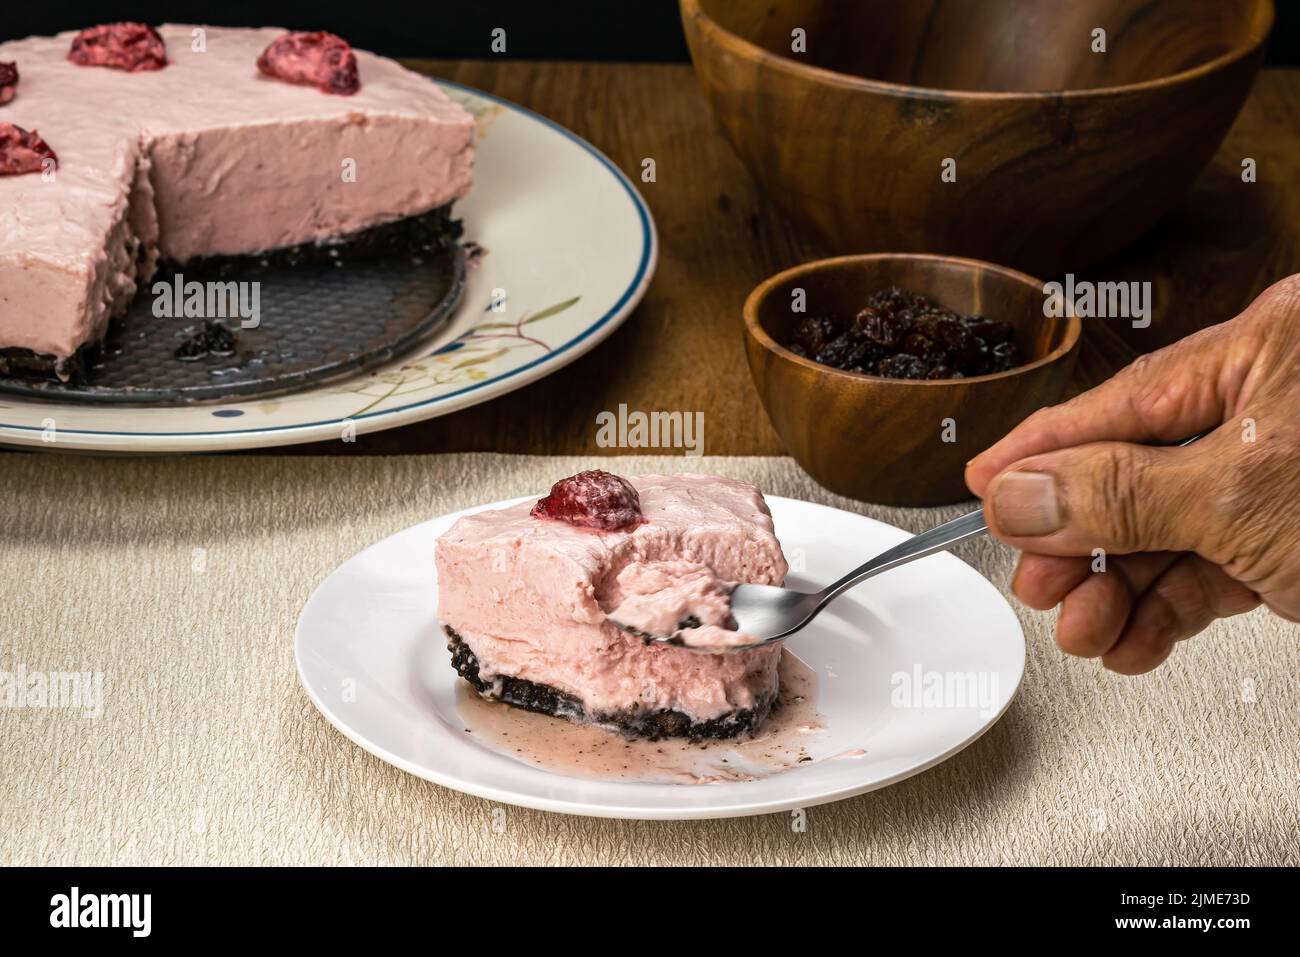 Mano anziana maschile utilizzando cucchiaio di metallo prendendo un boccone da deliziosa cheesecake di fragole surgelata fatta in casa in piatto di ceramica bianca. Foto Stock